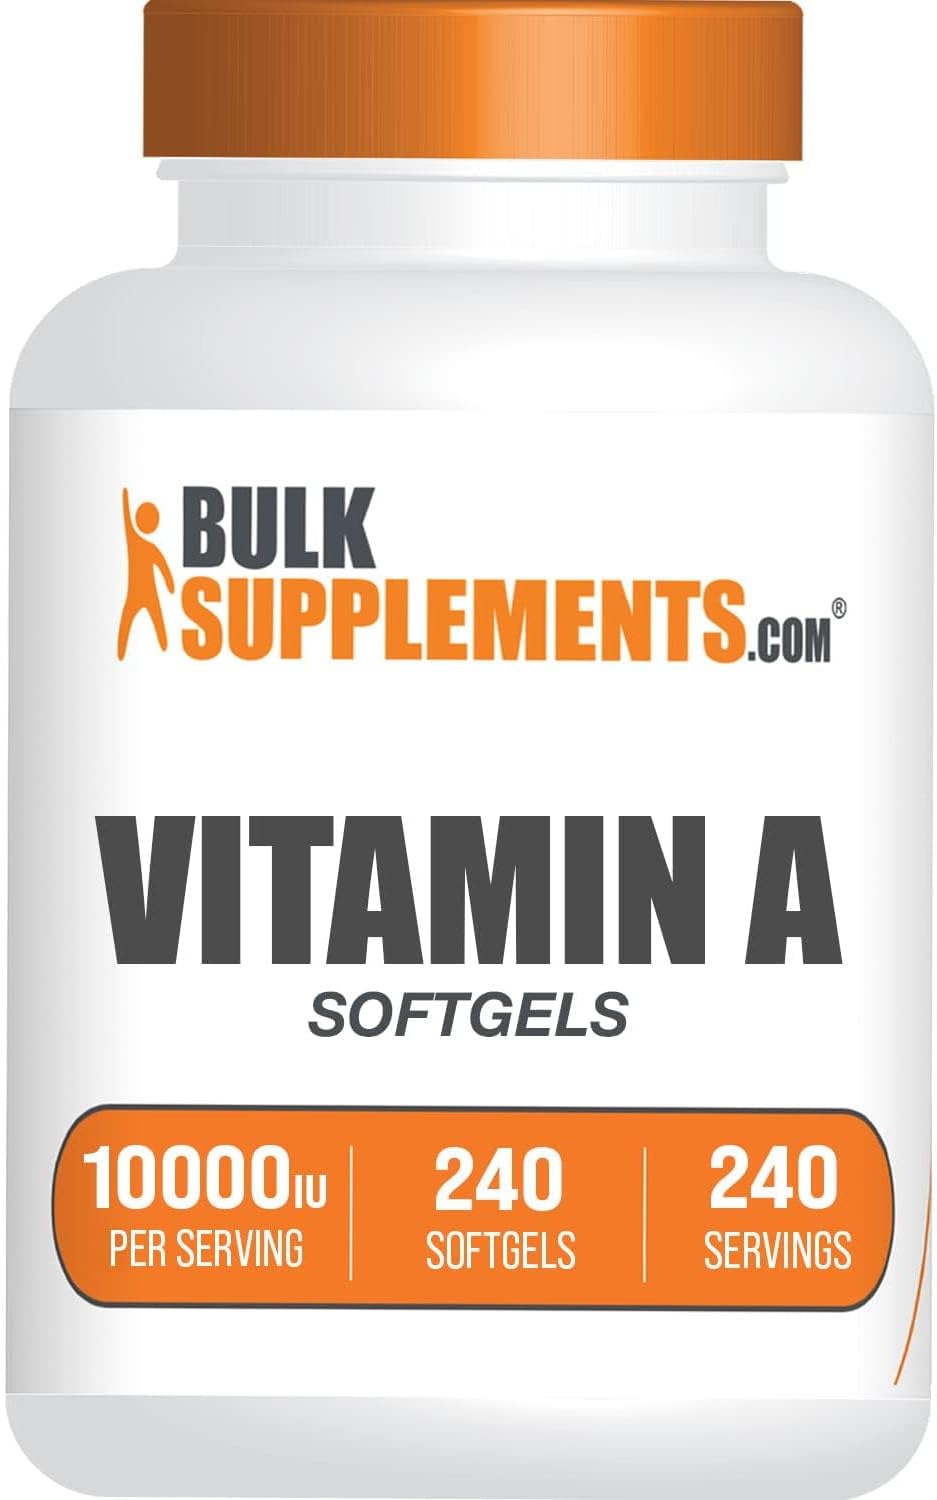 BULKSUPPLEMENTS.COM Vitamin A 10000 IU Softgels - Vitamin A Retinyl Palmitate, Vitamin A Pills - Vitamin A Supplement, Eye Supplements - Gluten Free, 1 Softgel per Serving, 240 Softgels